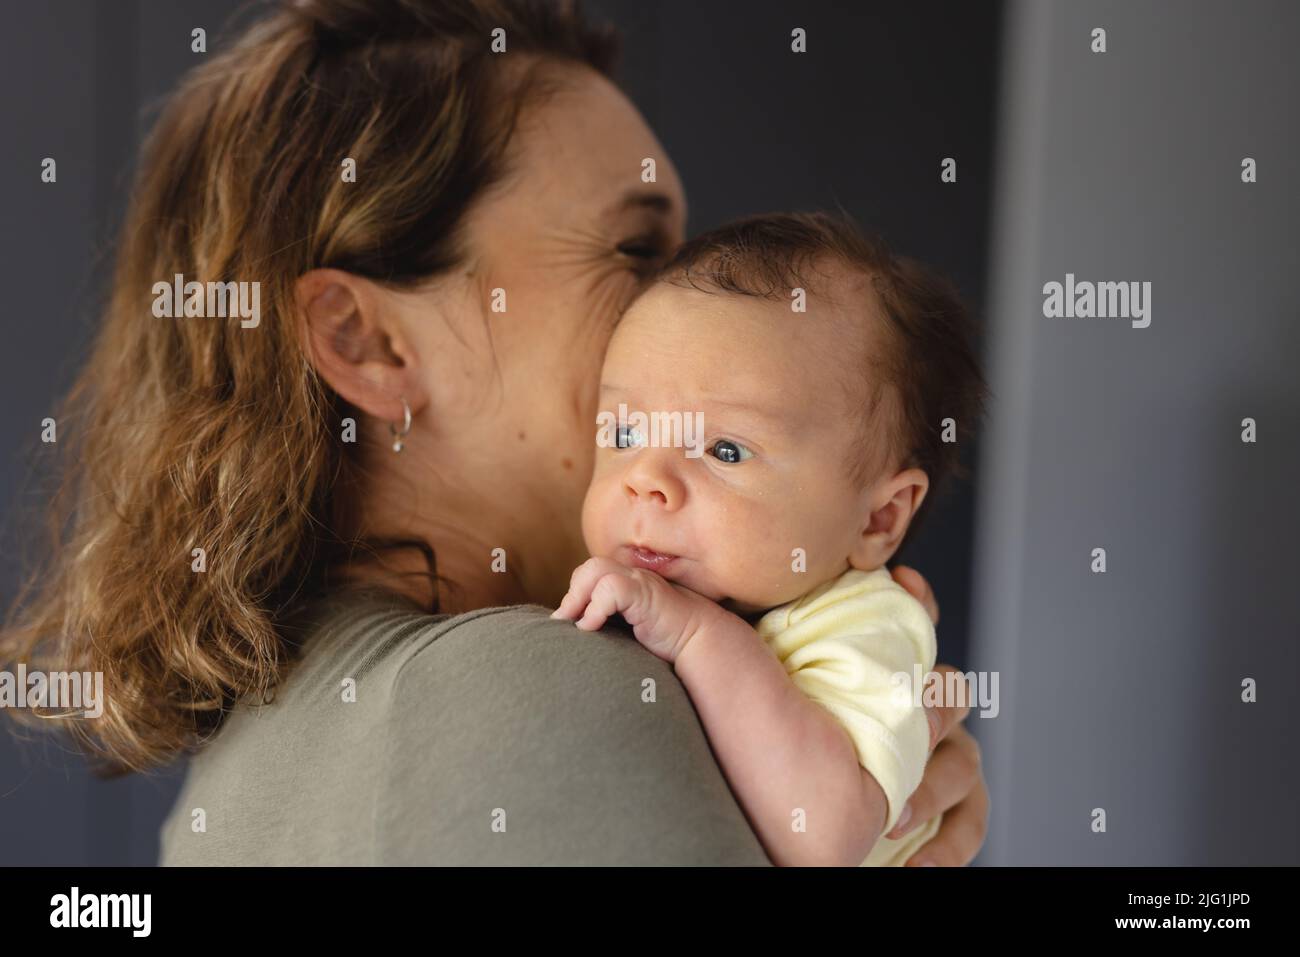 Bonne humeur adulte moyen de race blanche mère portant bébé mignon nouveau-né à la maison, espace de copie Banque D'Images